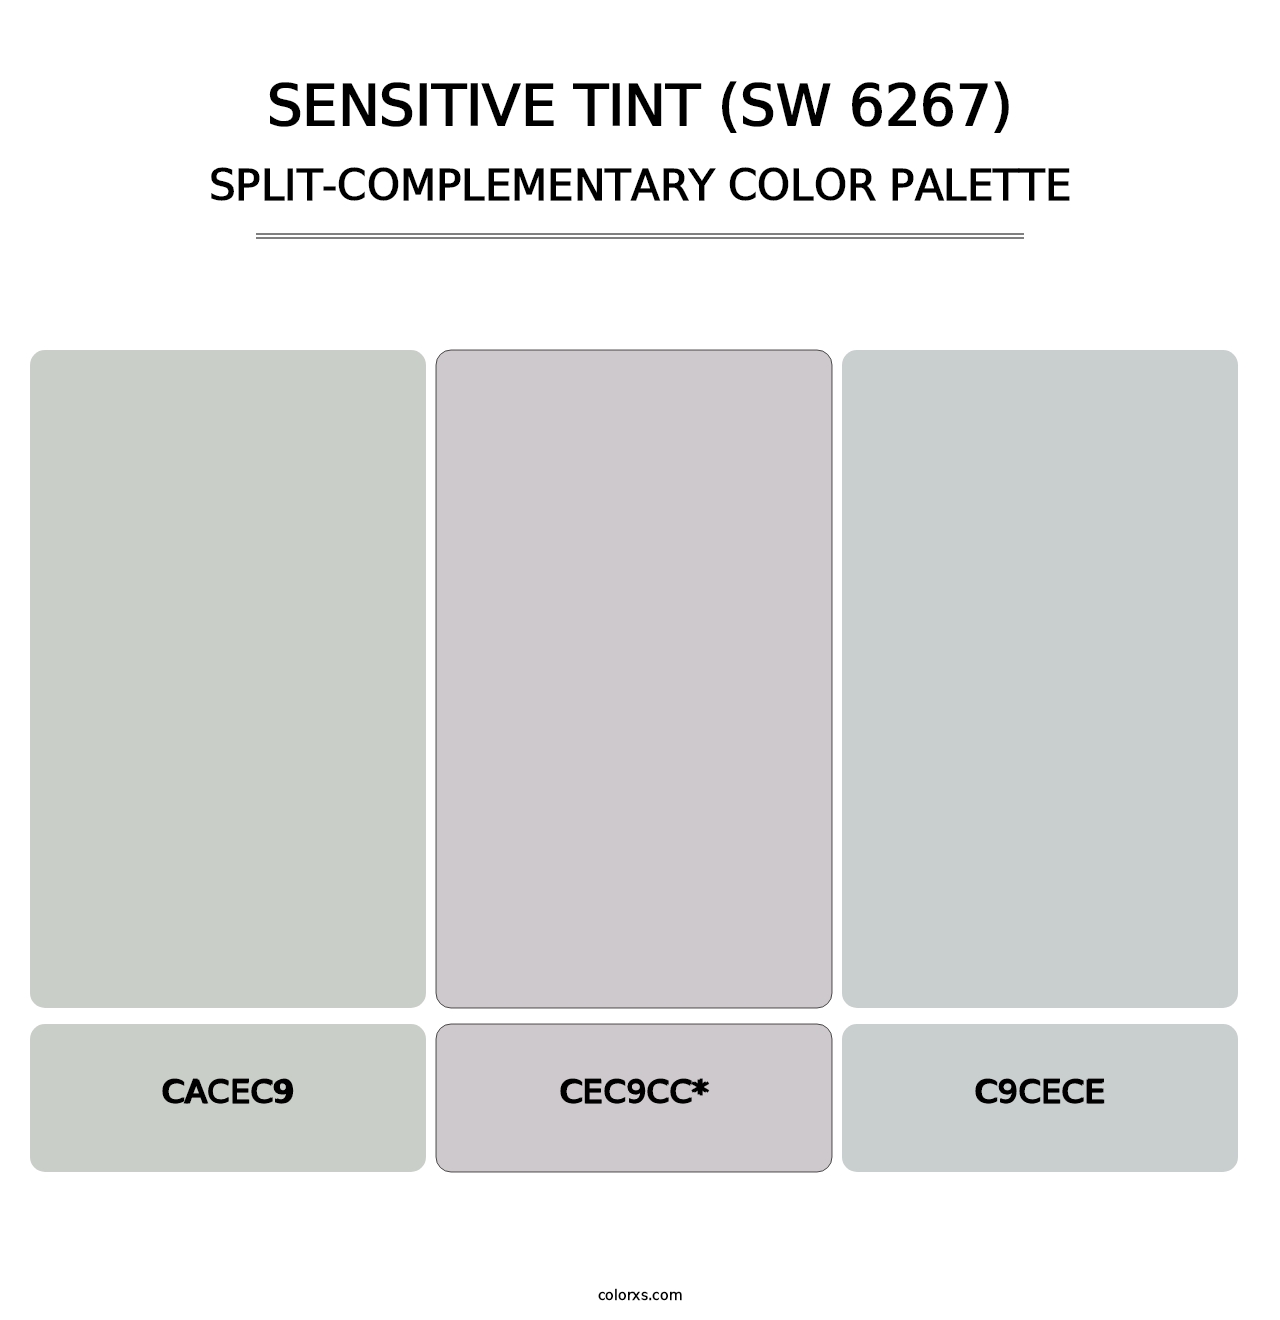 Sensitive Tint (SW 6267) - Split-Complementary Color Palette